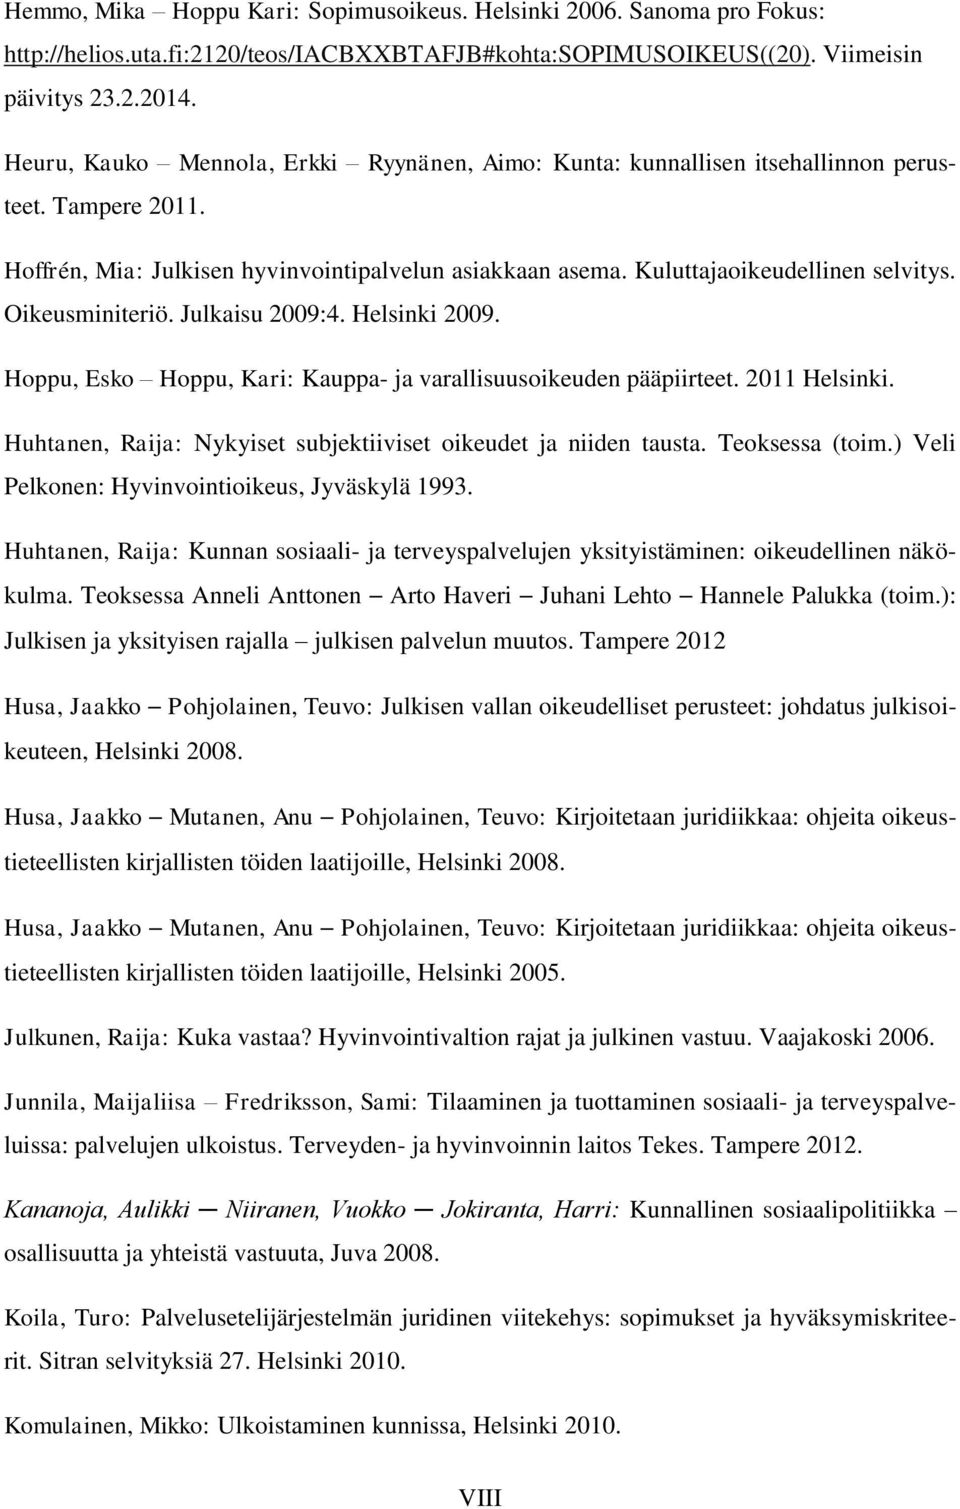 Oikeusminiteriö. Julkaisu 2009:4. Helsinki 2009. Hoppu, Esko Hoppu, Kari: Kauppa- ja varallisuusoikeuden pääpiirteet. 2011 Helsinki. Huhtanen, Raija: Nykyiset subjektiiviset oikeudet ja niiden tausta.